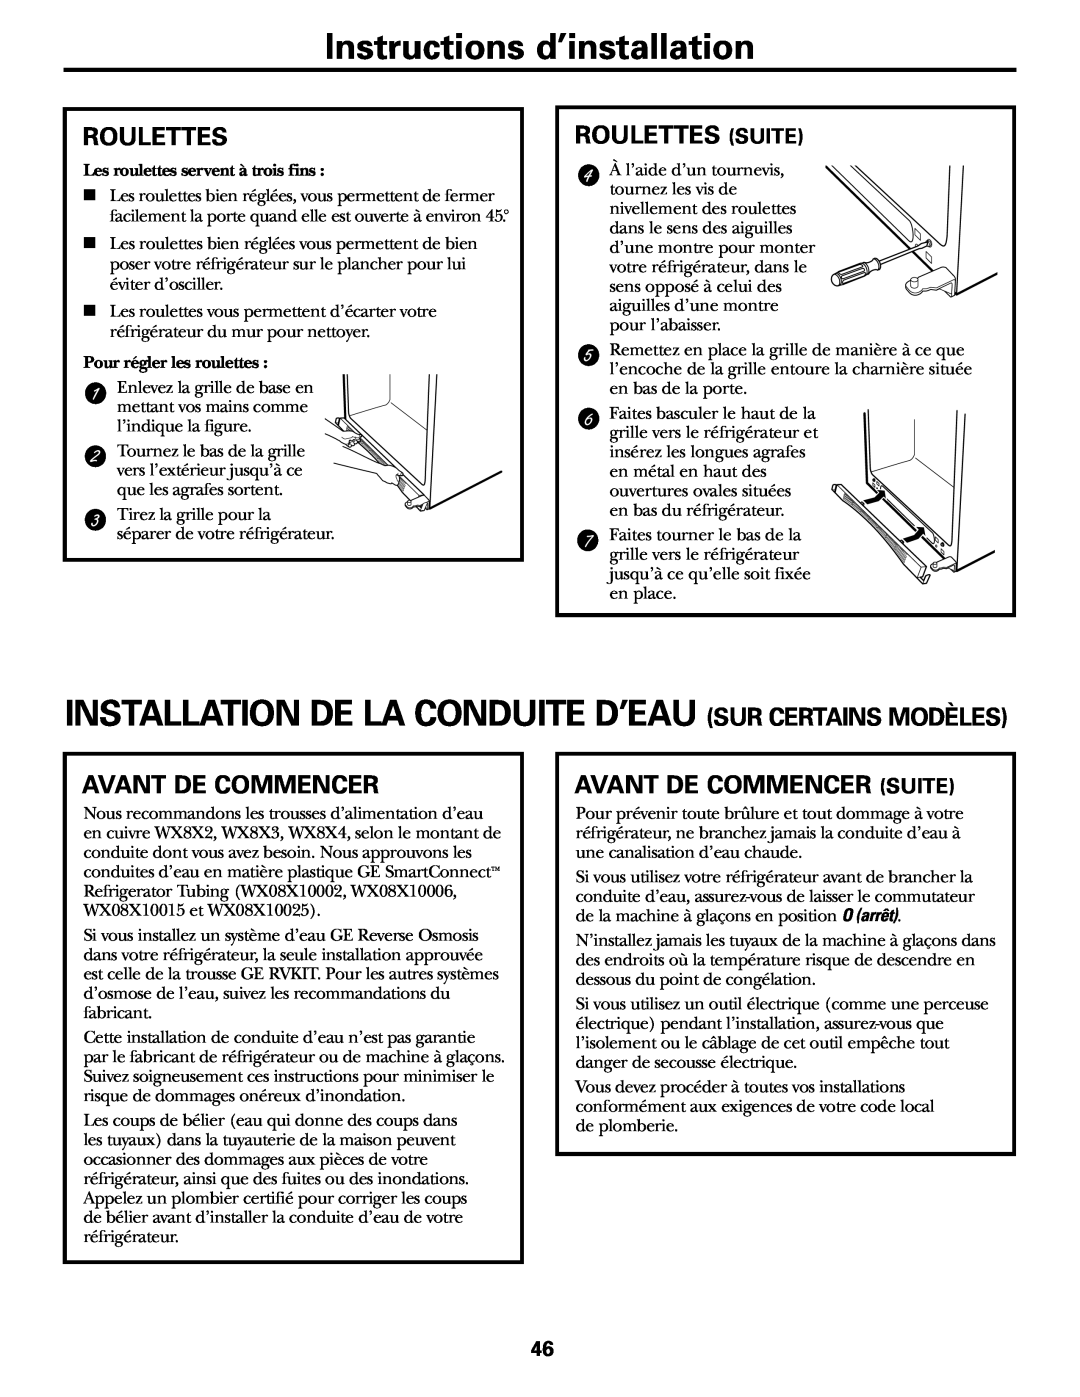 GE 200D2463P002 Instructions d’installation, Installation De La Conduite D’Eau Sur Certains Modèles, Roulettes 